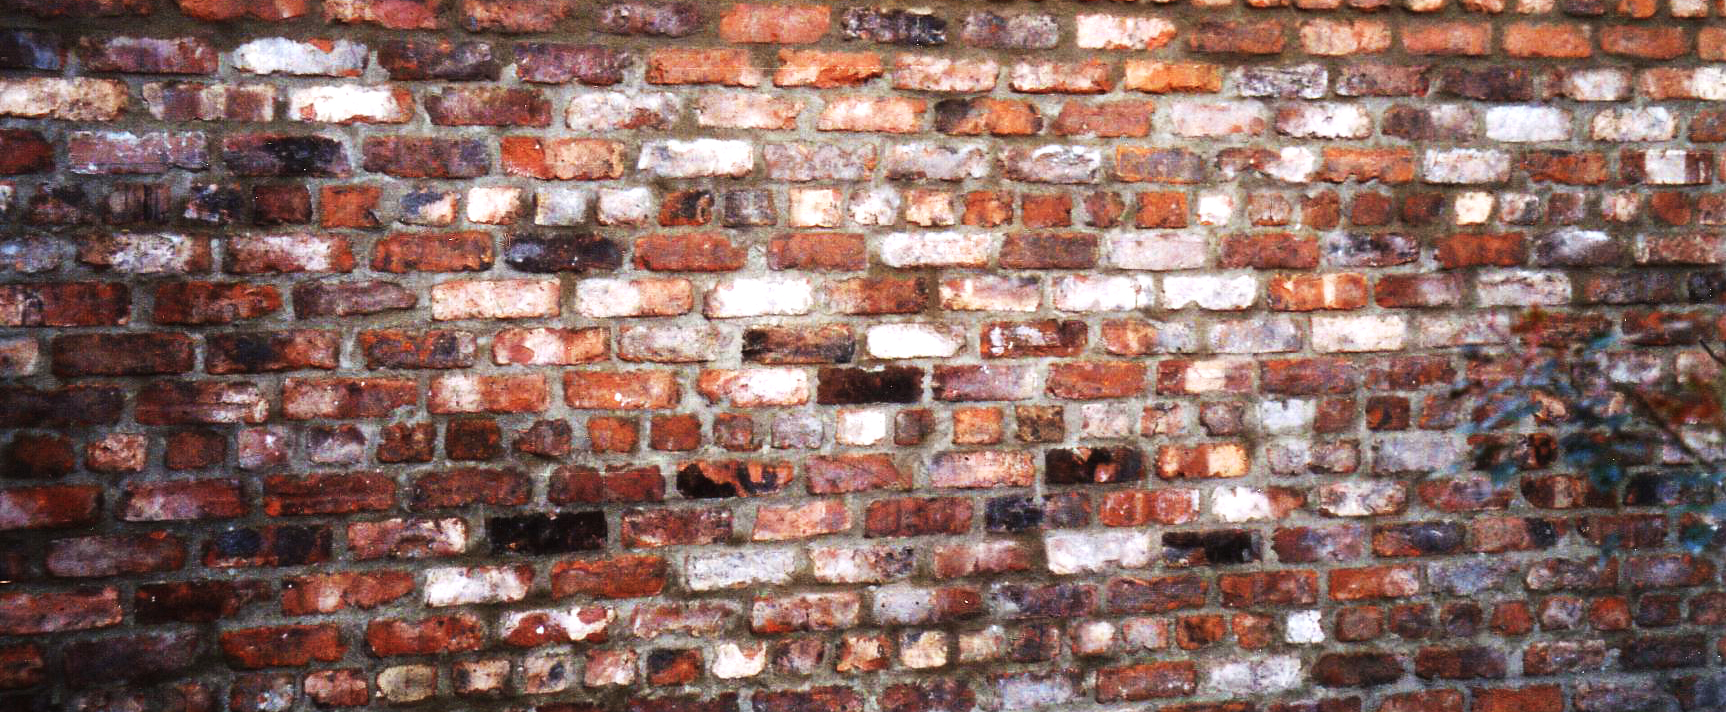 Brick wall thickness